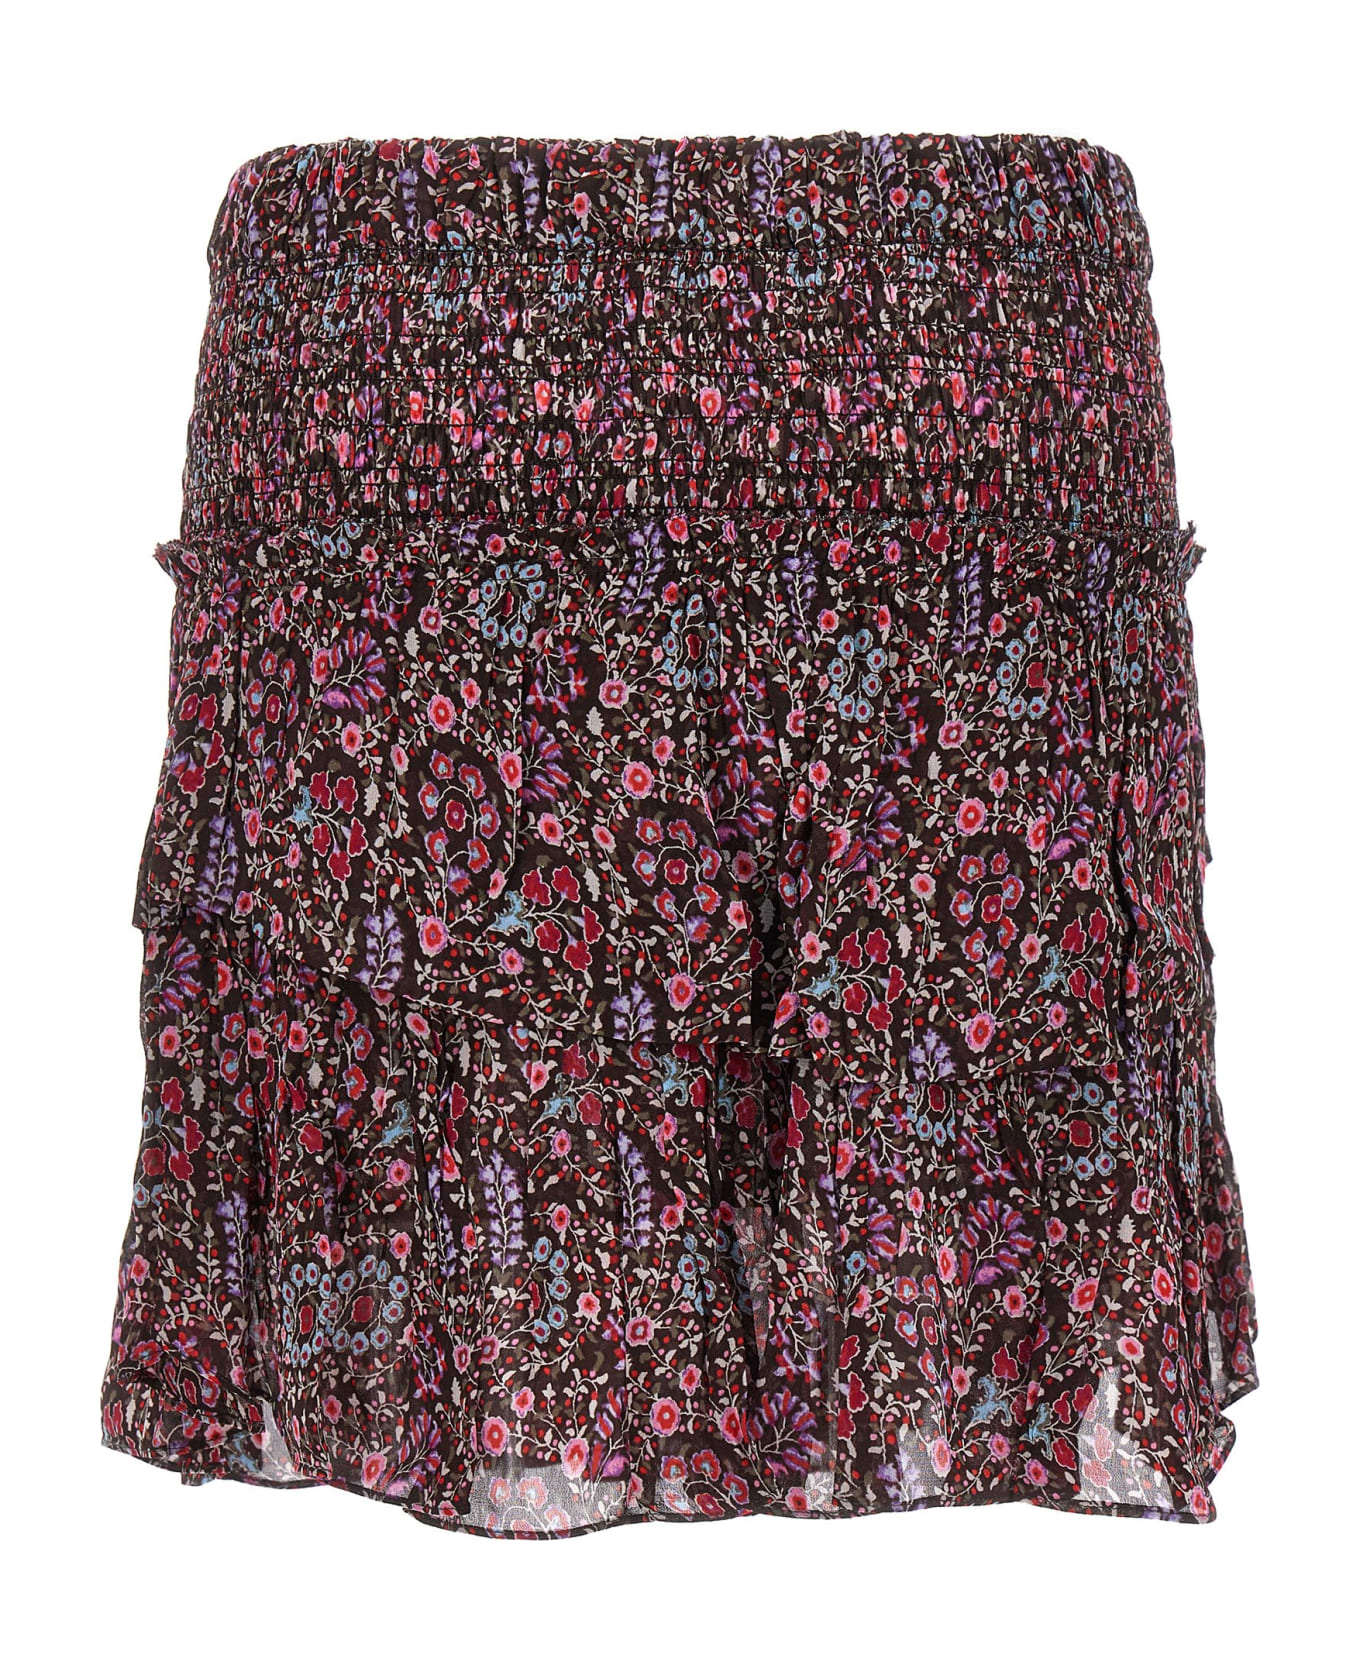 Marant Étoile Hilari Mini Skirt - Bw Brown